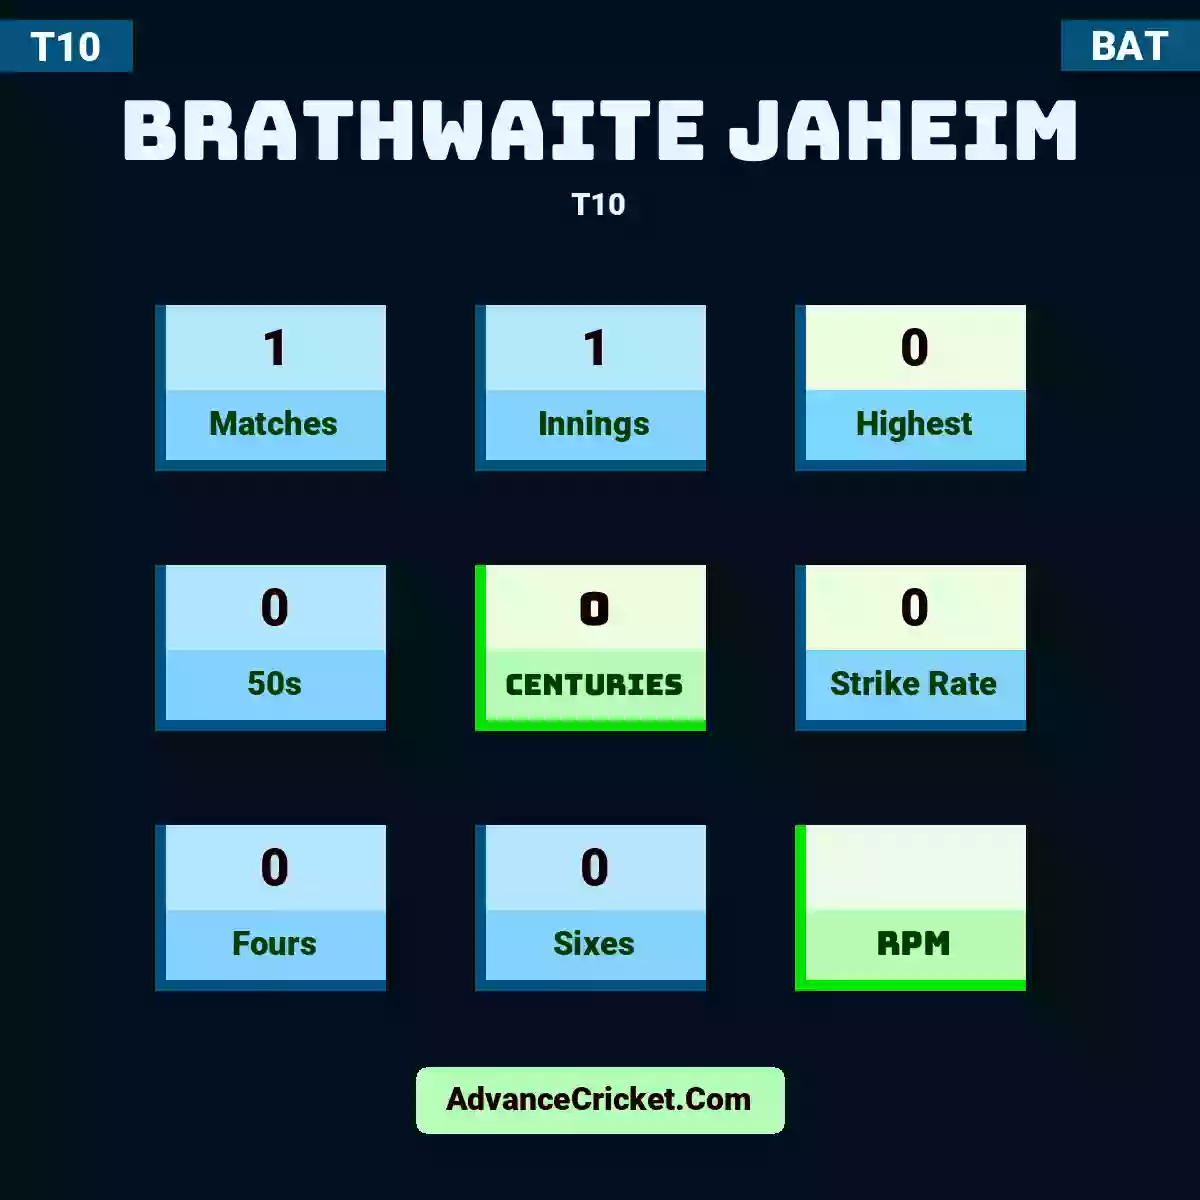 Brathwaite Jaheim T10 , Brathwaite Jaheim played 1 matches, scored 0 runs as highest, 0 half-centuries, and 0 centuries, with a strike rate of 0. B.Jaheim hit 0 fours and 0 sixes.